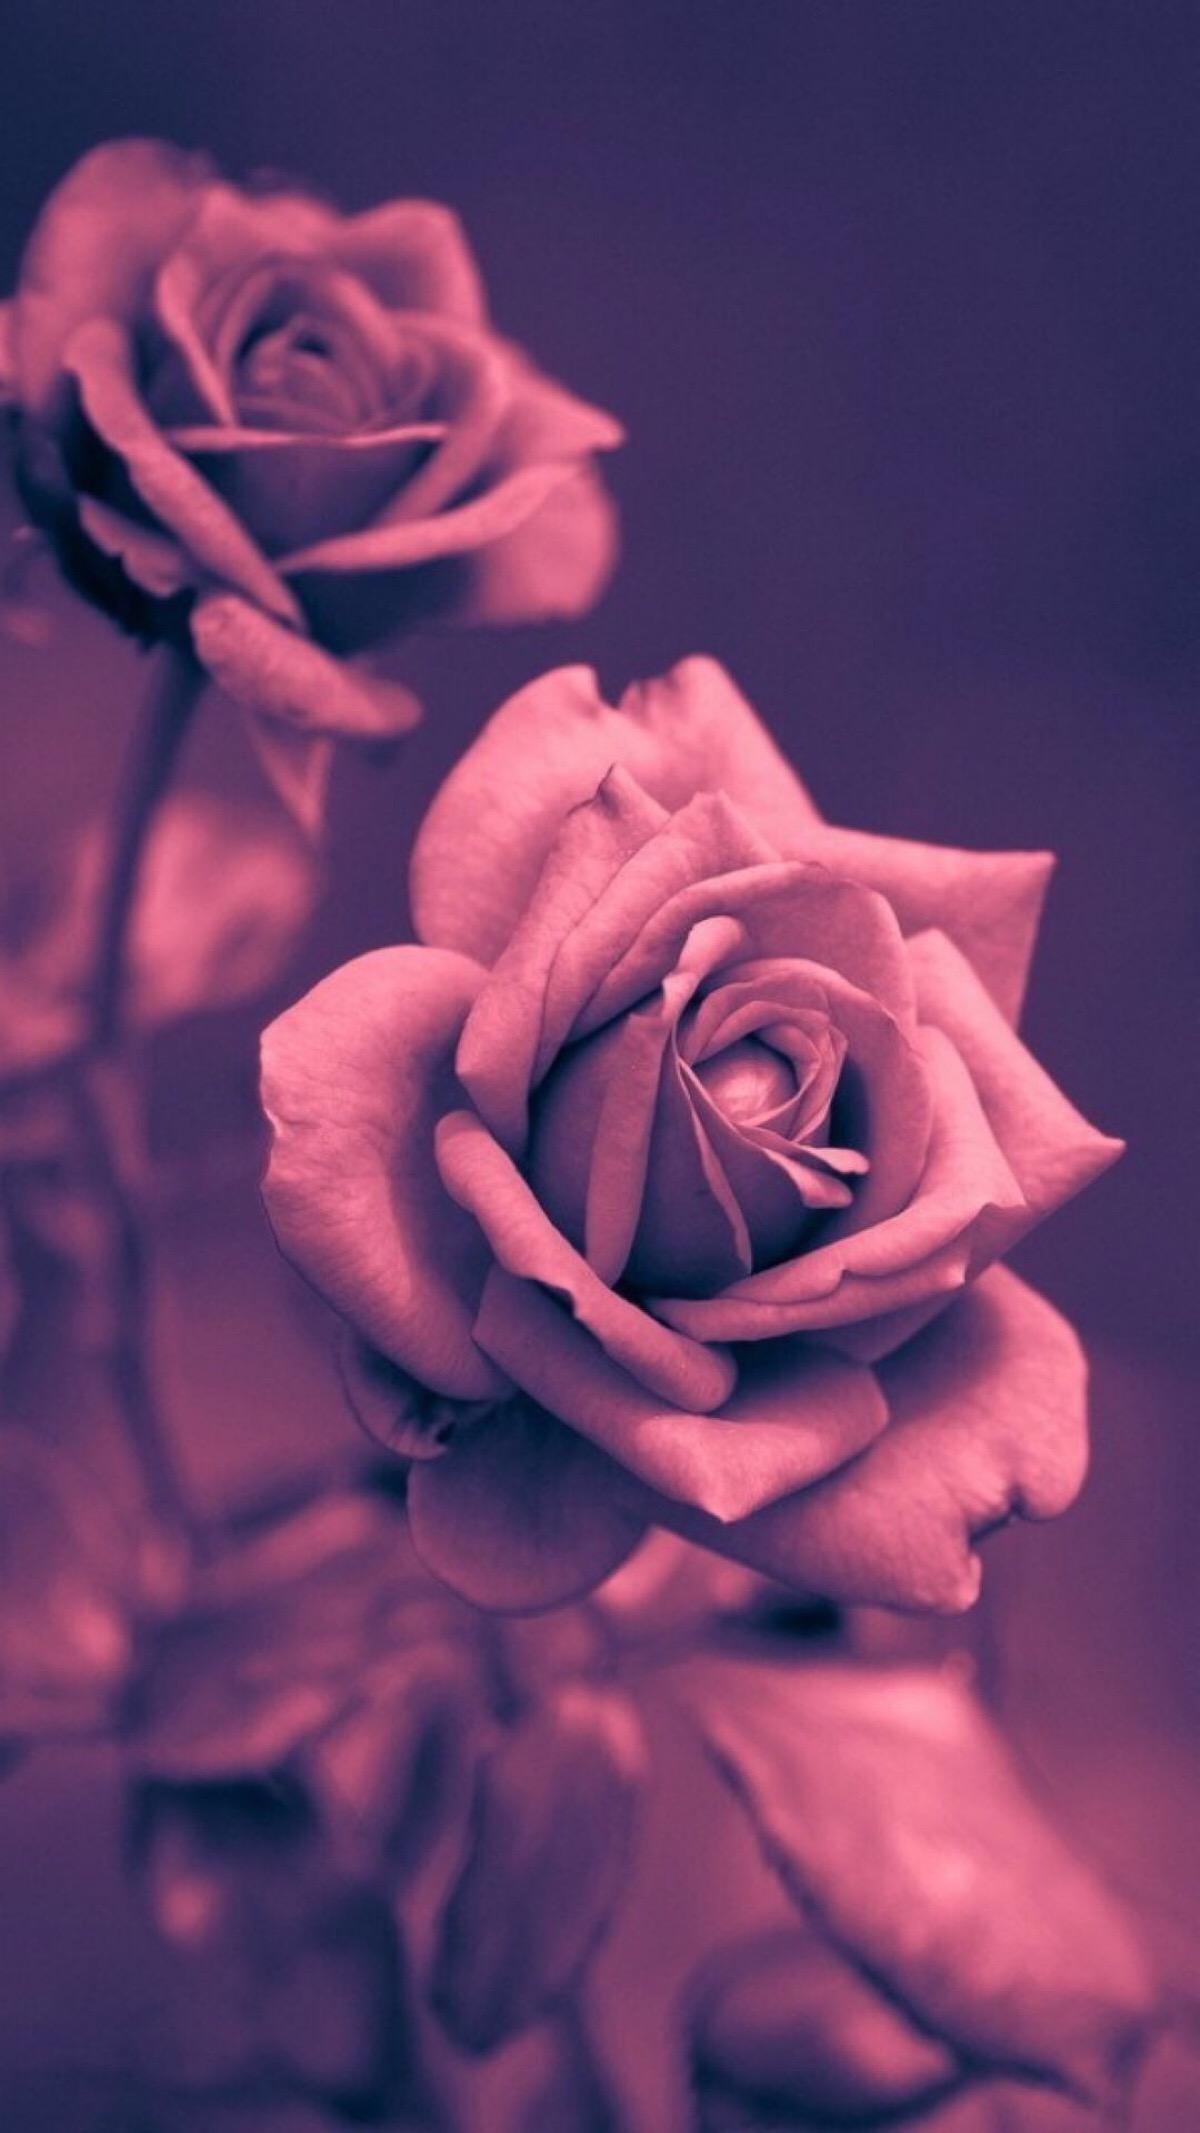 玫瑰与爱是如此类似， 盛开的玫瑰会一瓣一瓣落下